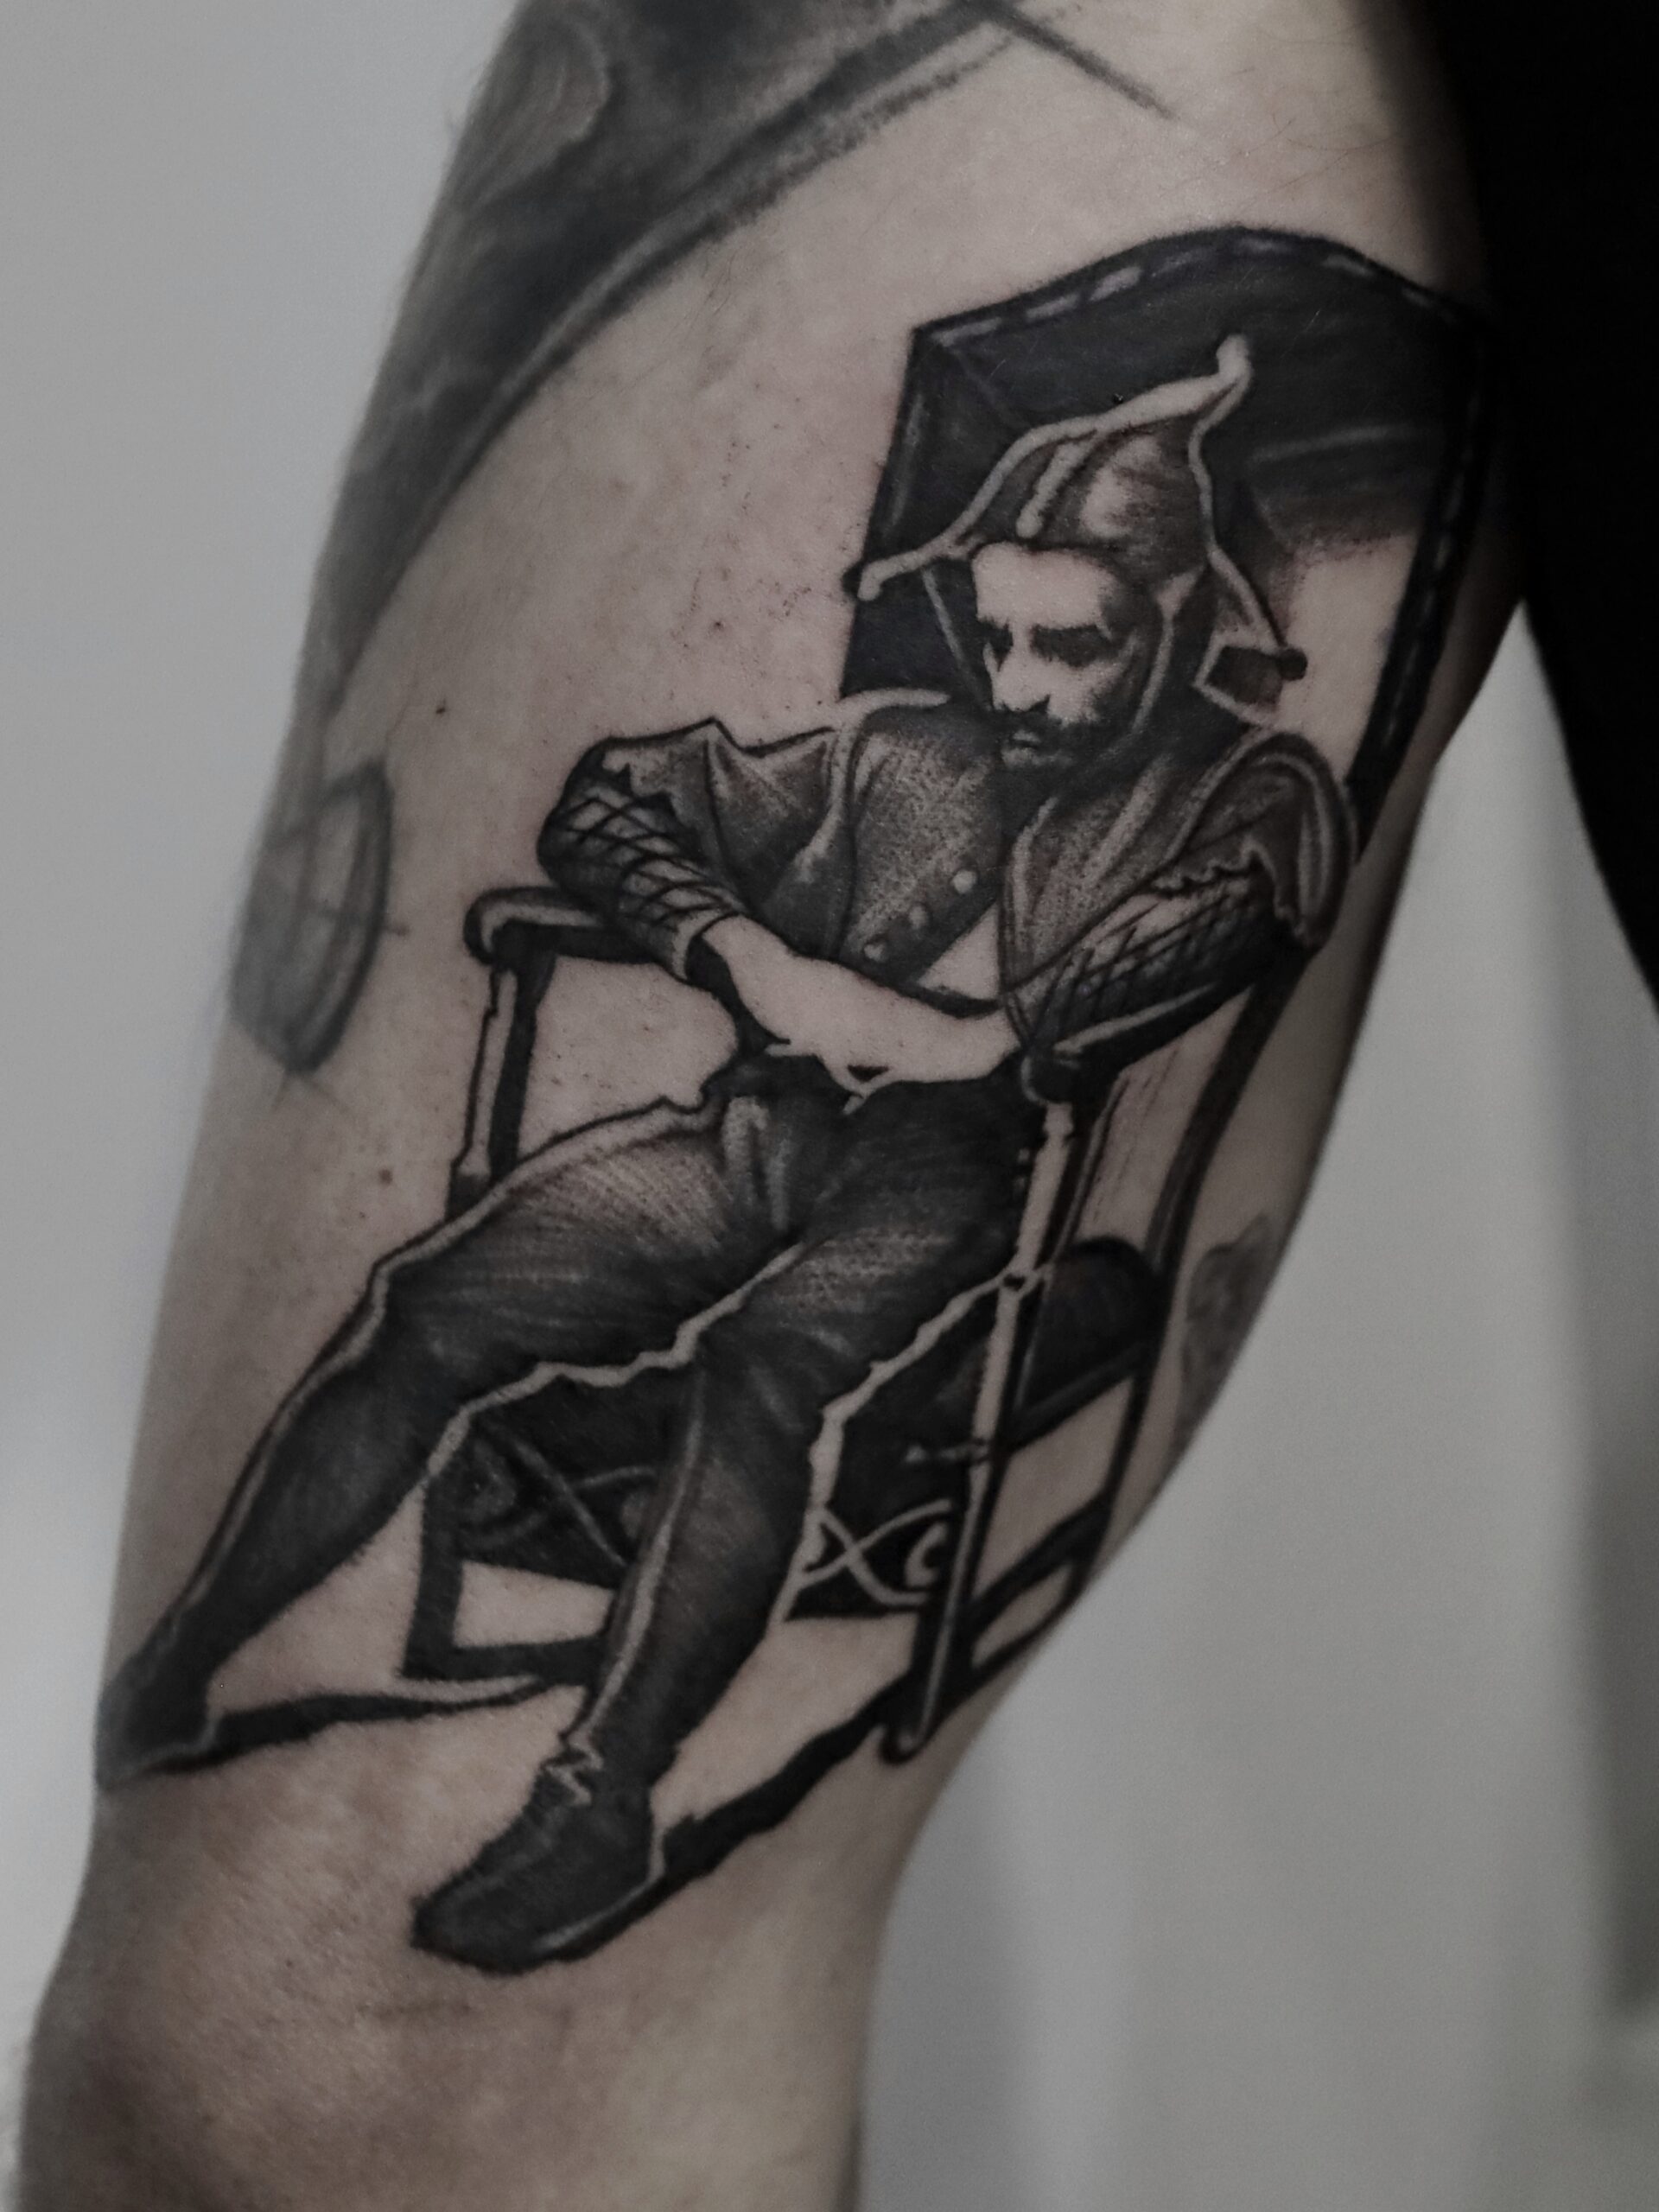 White Rat Tattoo Studio Tatuażu Warszawa Tomek Realistyczny Tatuaż Stańczyk obraz